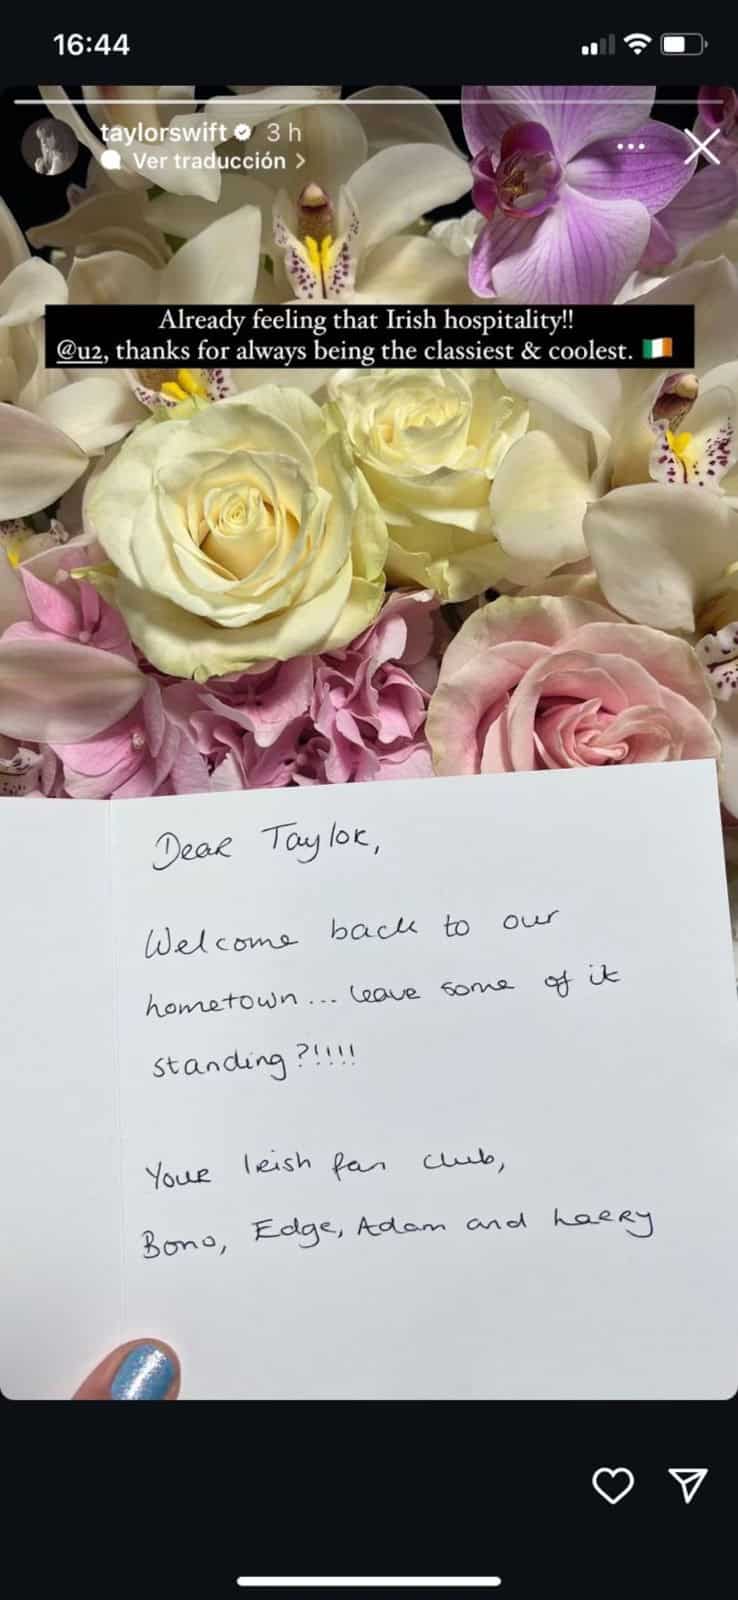 U2 envía flores  a Taylor Swift antes  de shows en Dublin